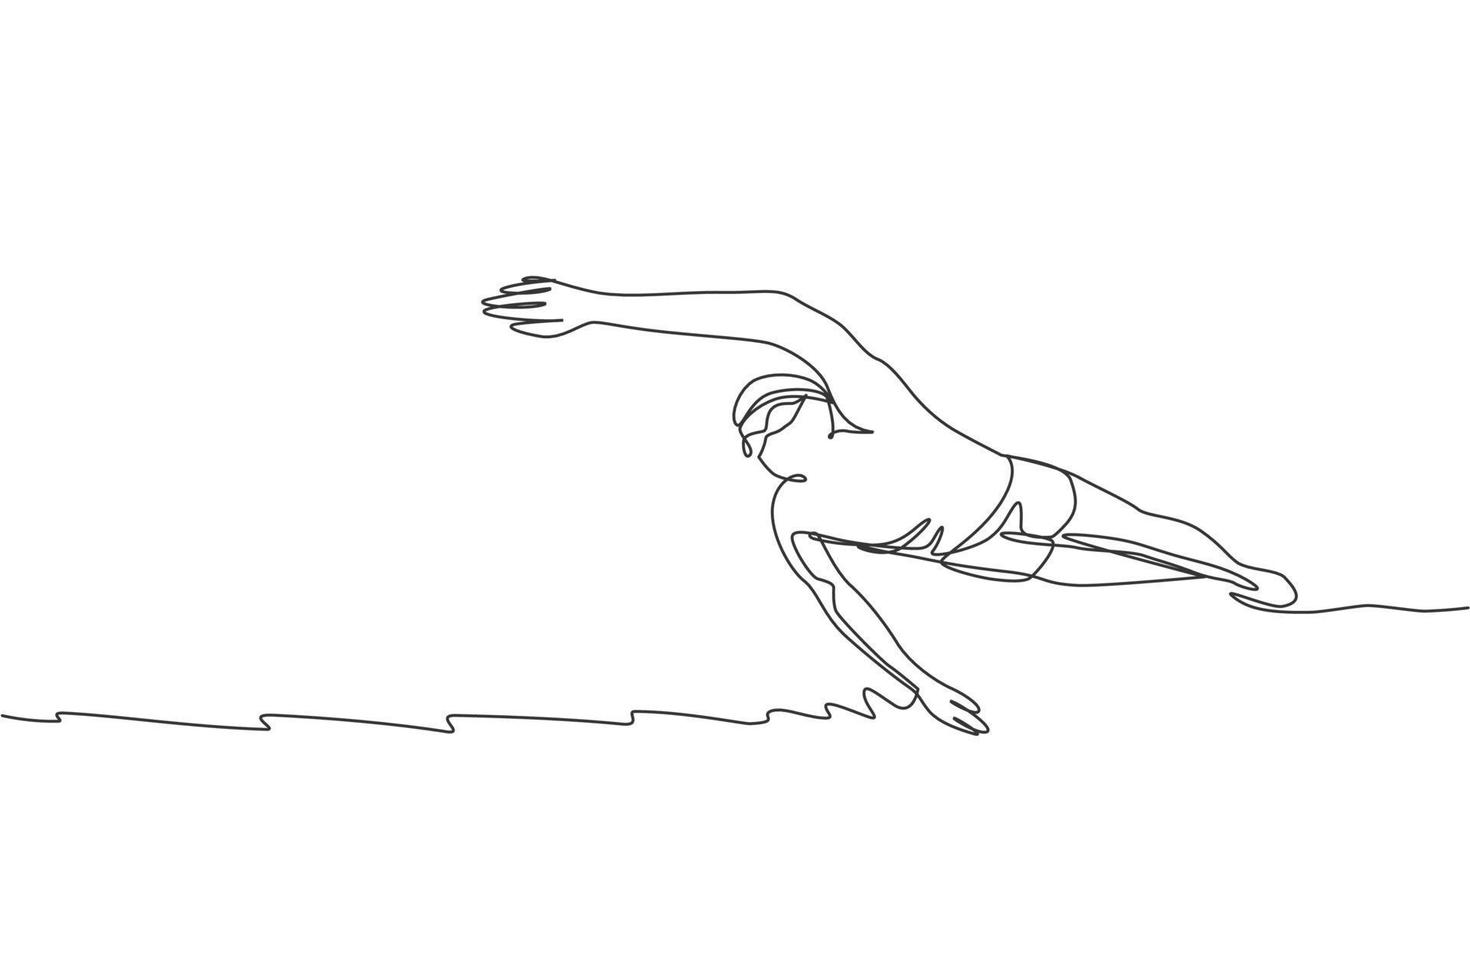 un dessin en ligne continu d'un jeune nageur professionnel musclé nageant dans un centre sportif. concept d'exercice cardio sport et fitness sain. illustration vectorielle de dessin dynamique à une seule ligne vecteur